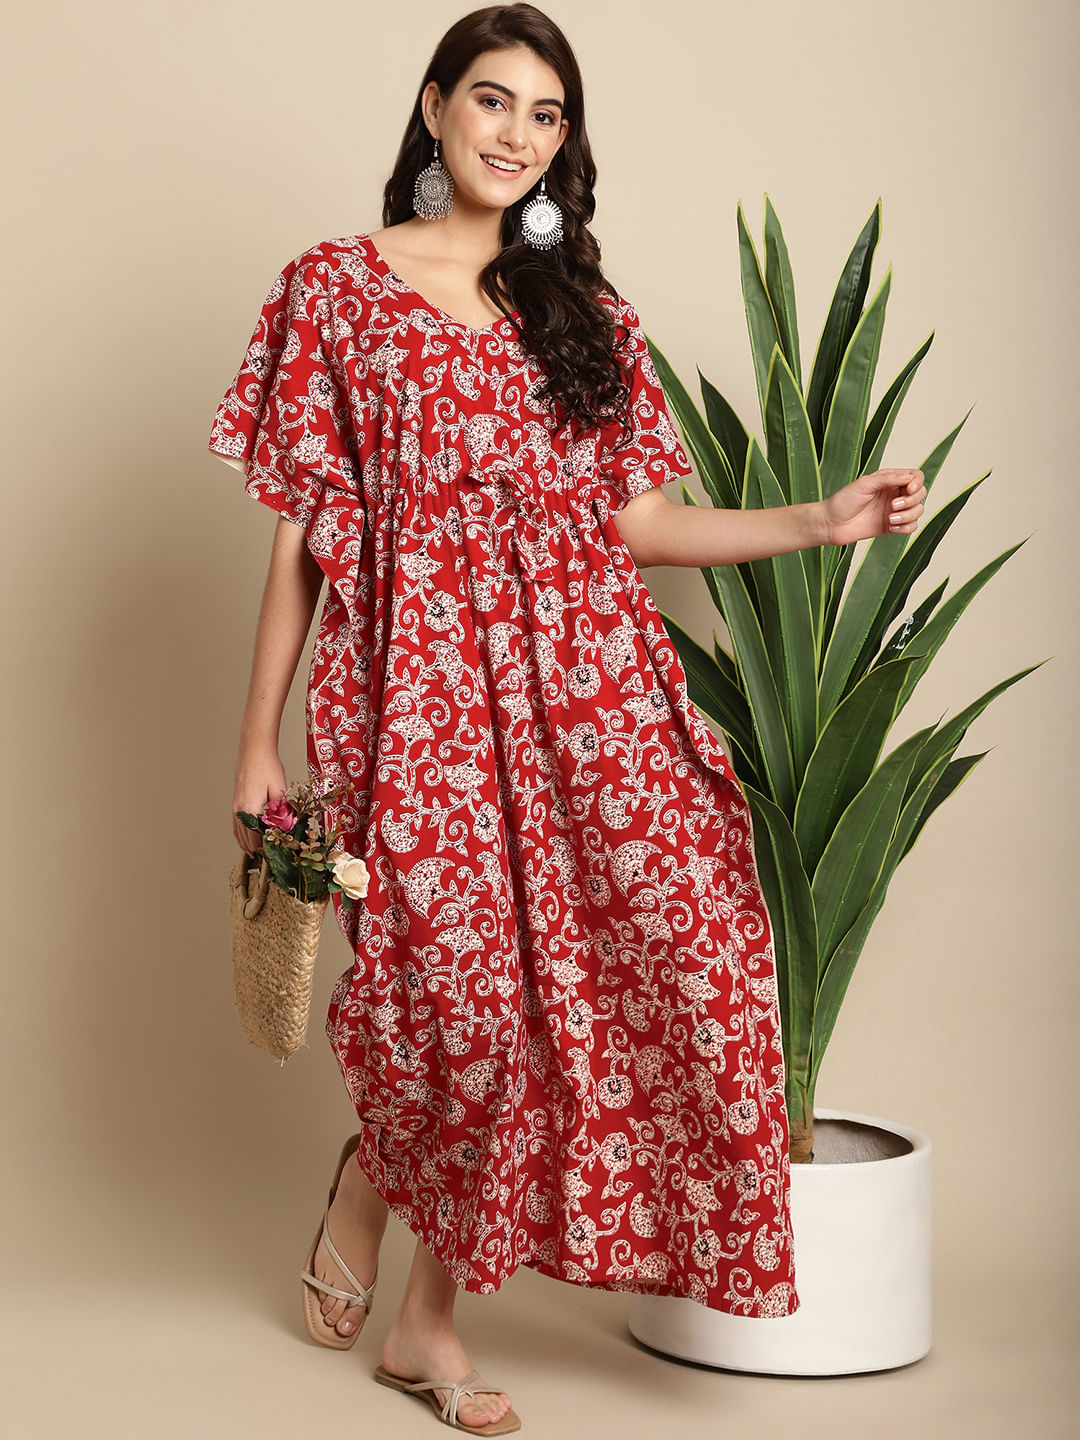 Red & White Batik Print Floral Cotton Kaftan